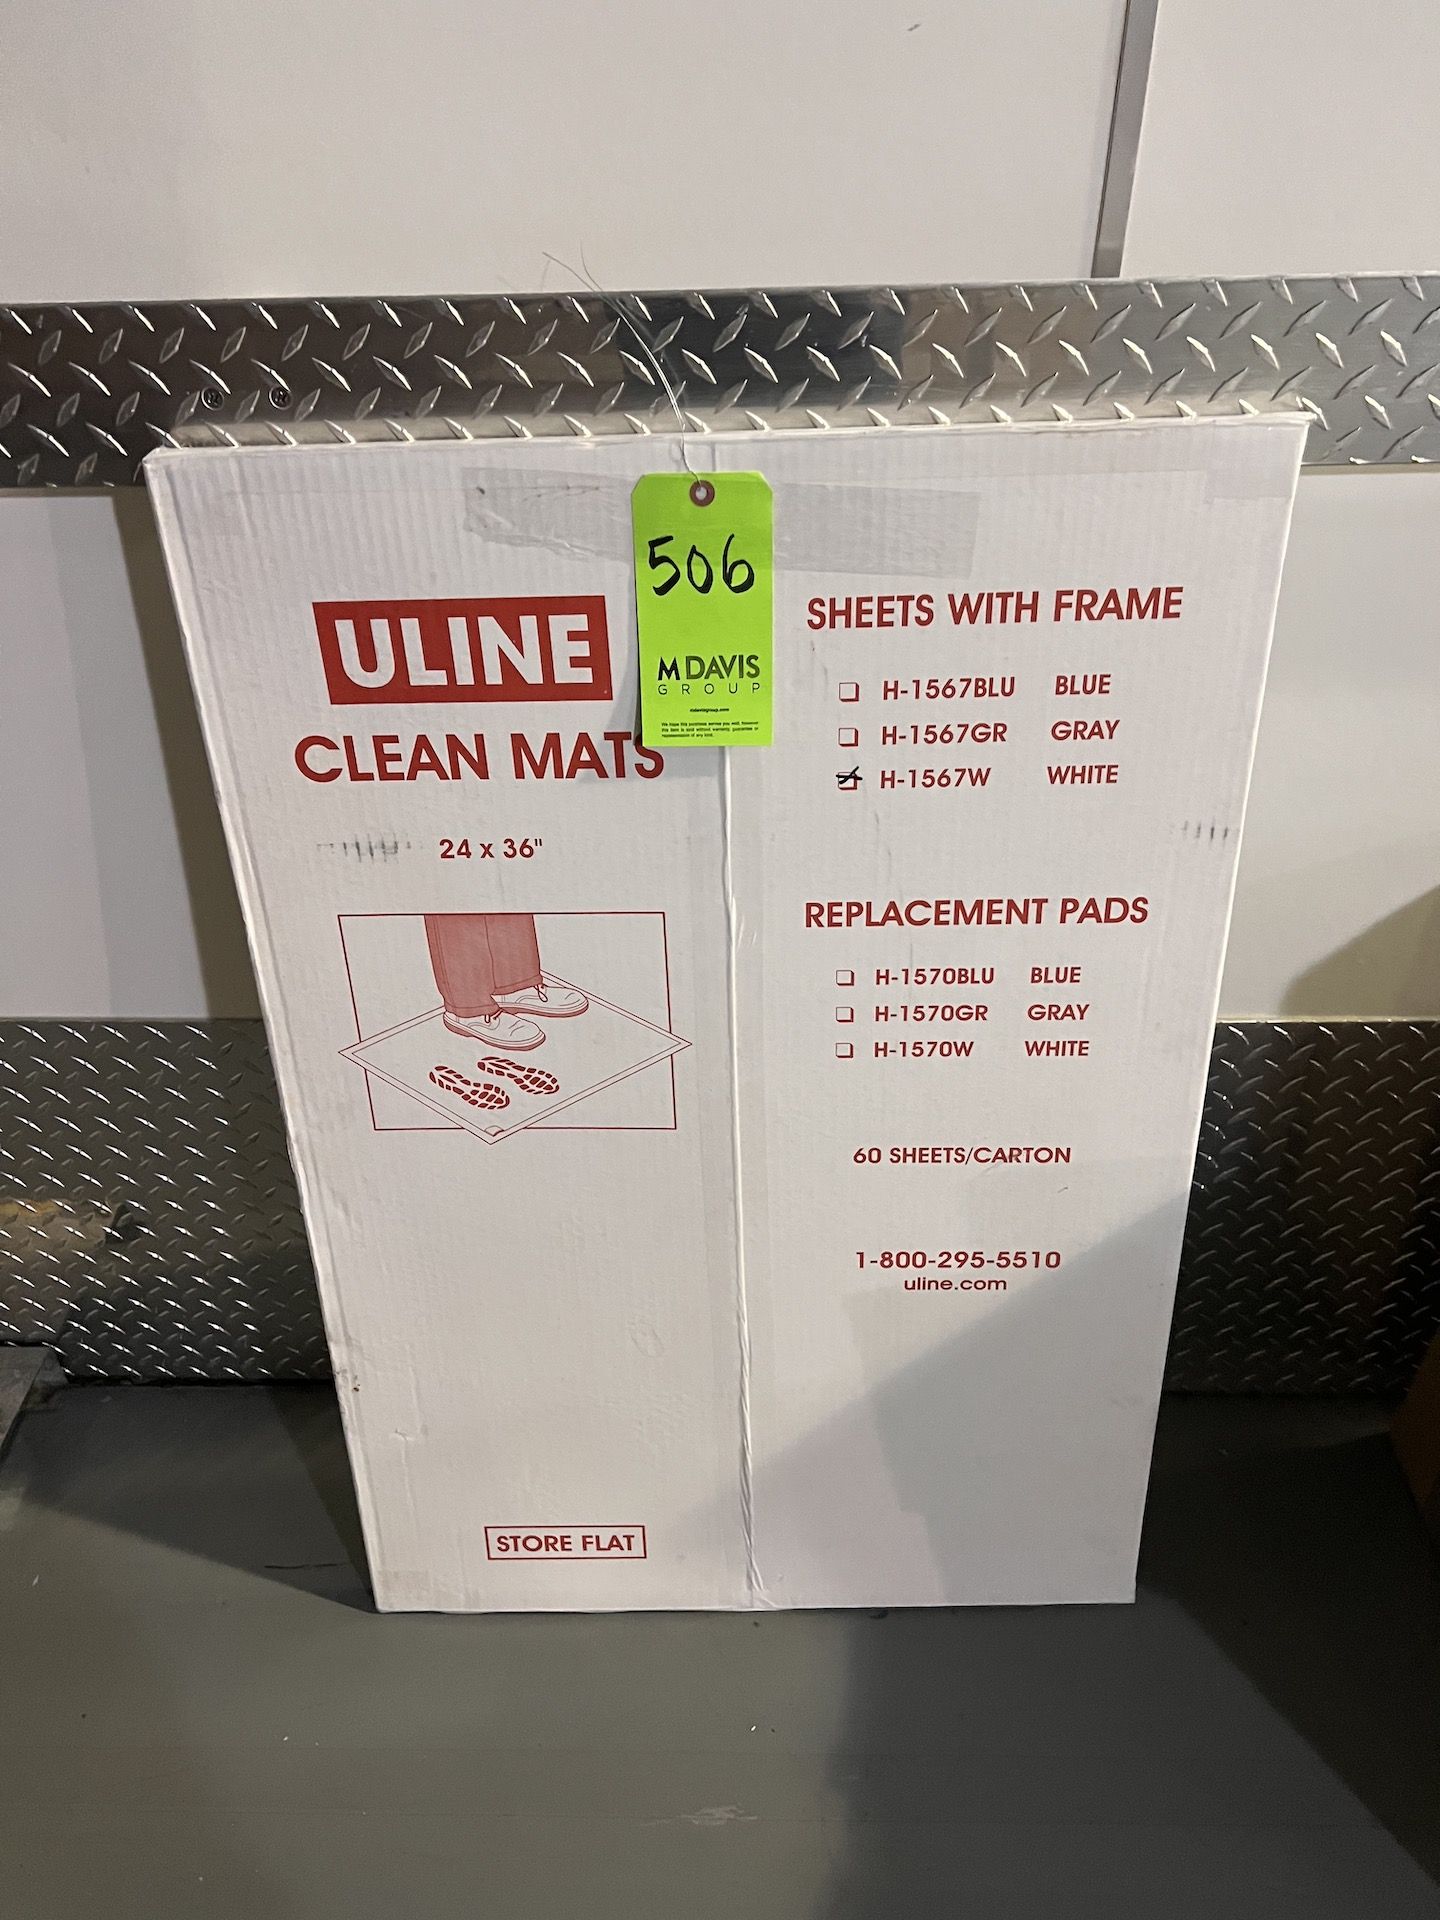 ULINE CLEAN MATS H-1567W, 24 IN. X 36 IN.